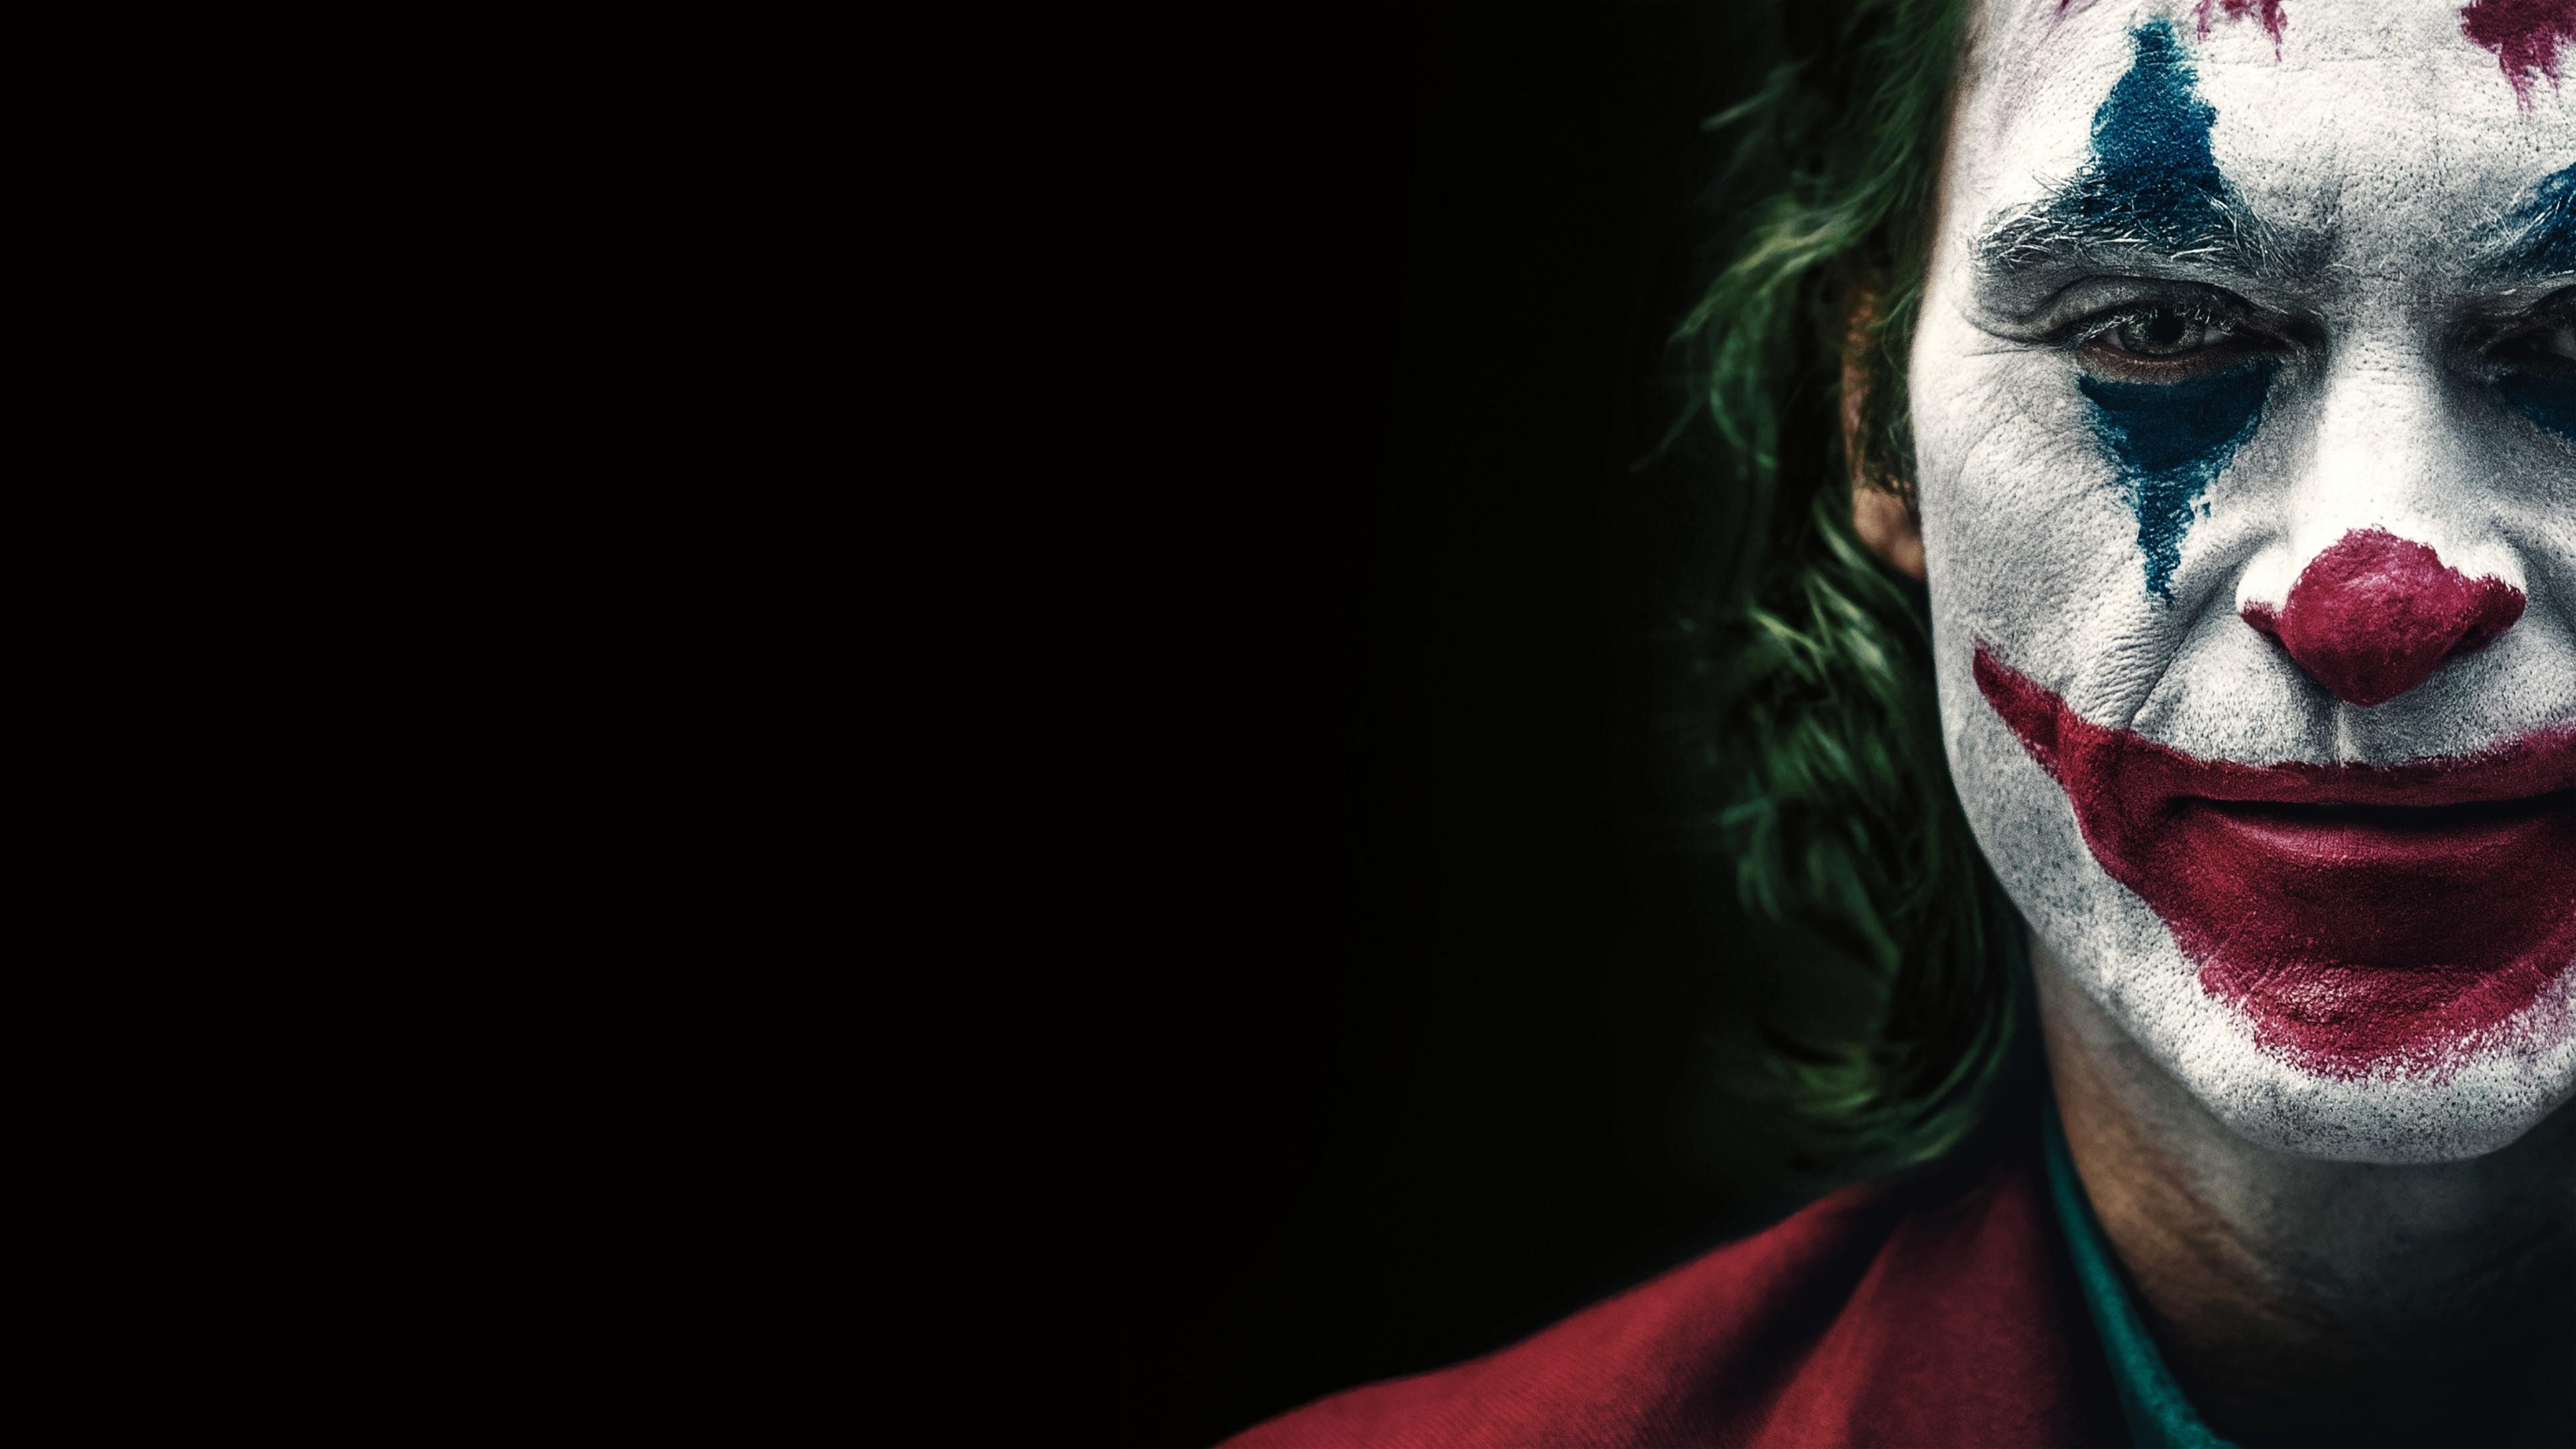 Joaquin Phoenix as Joker 2019 4K 8K Wallpaper. HD